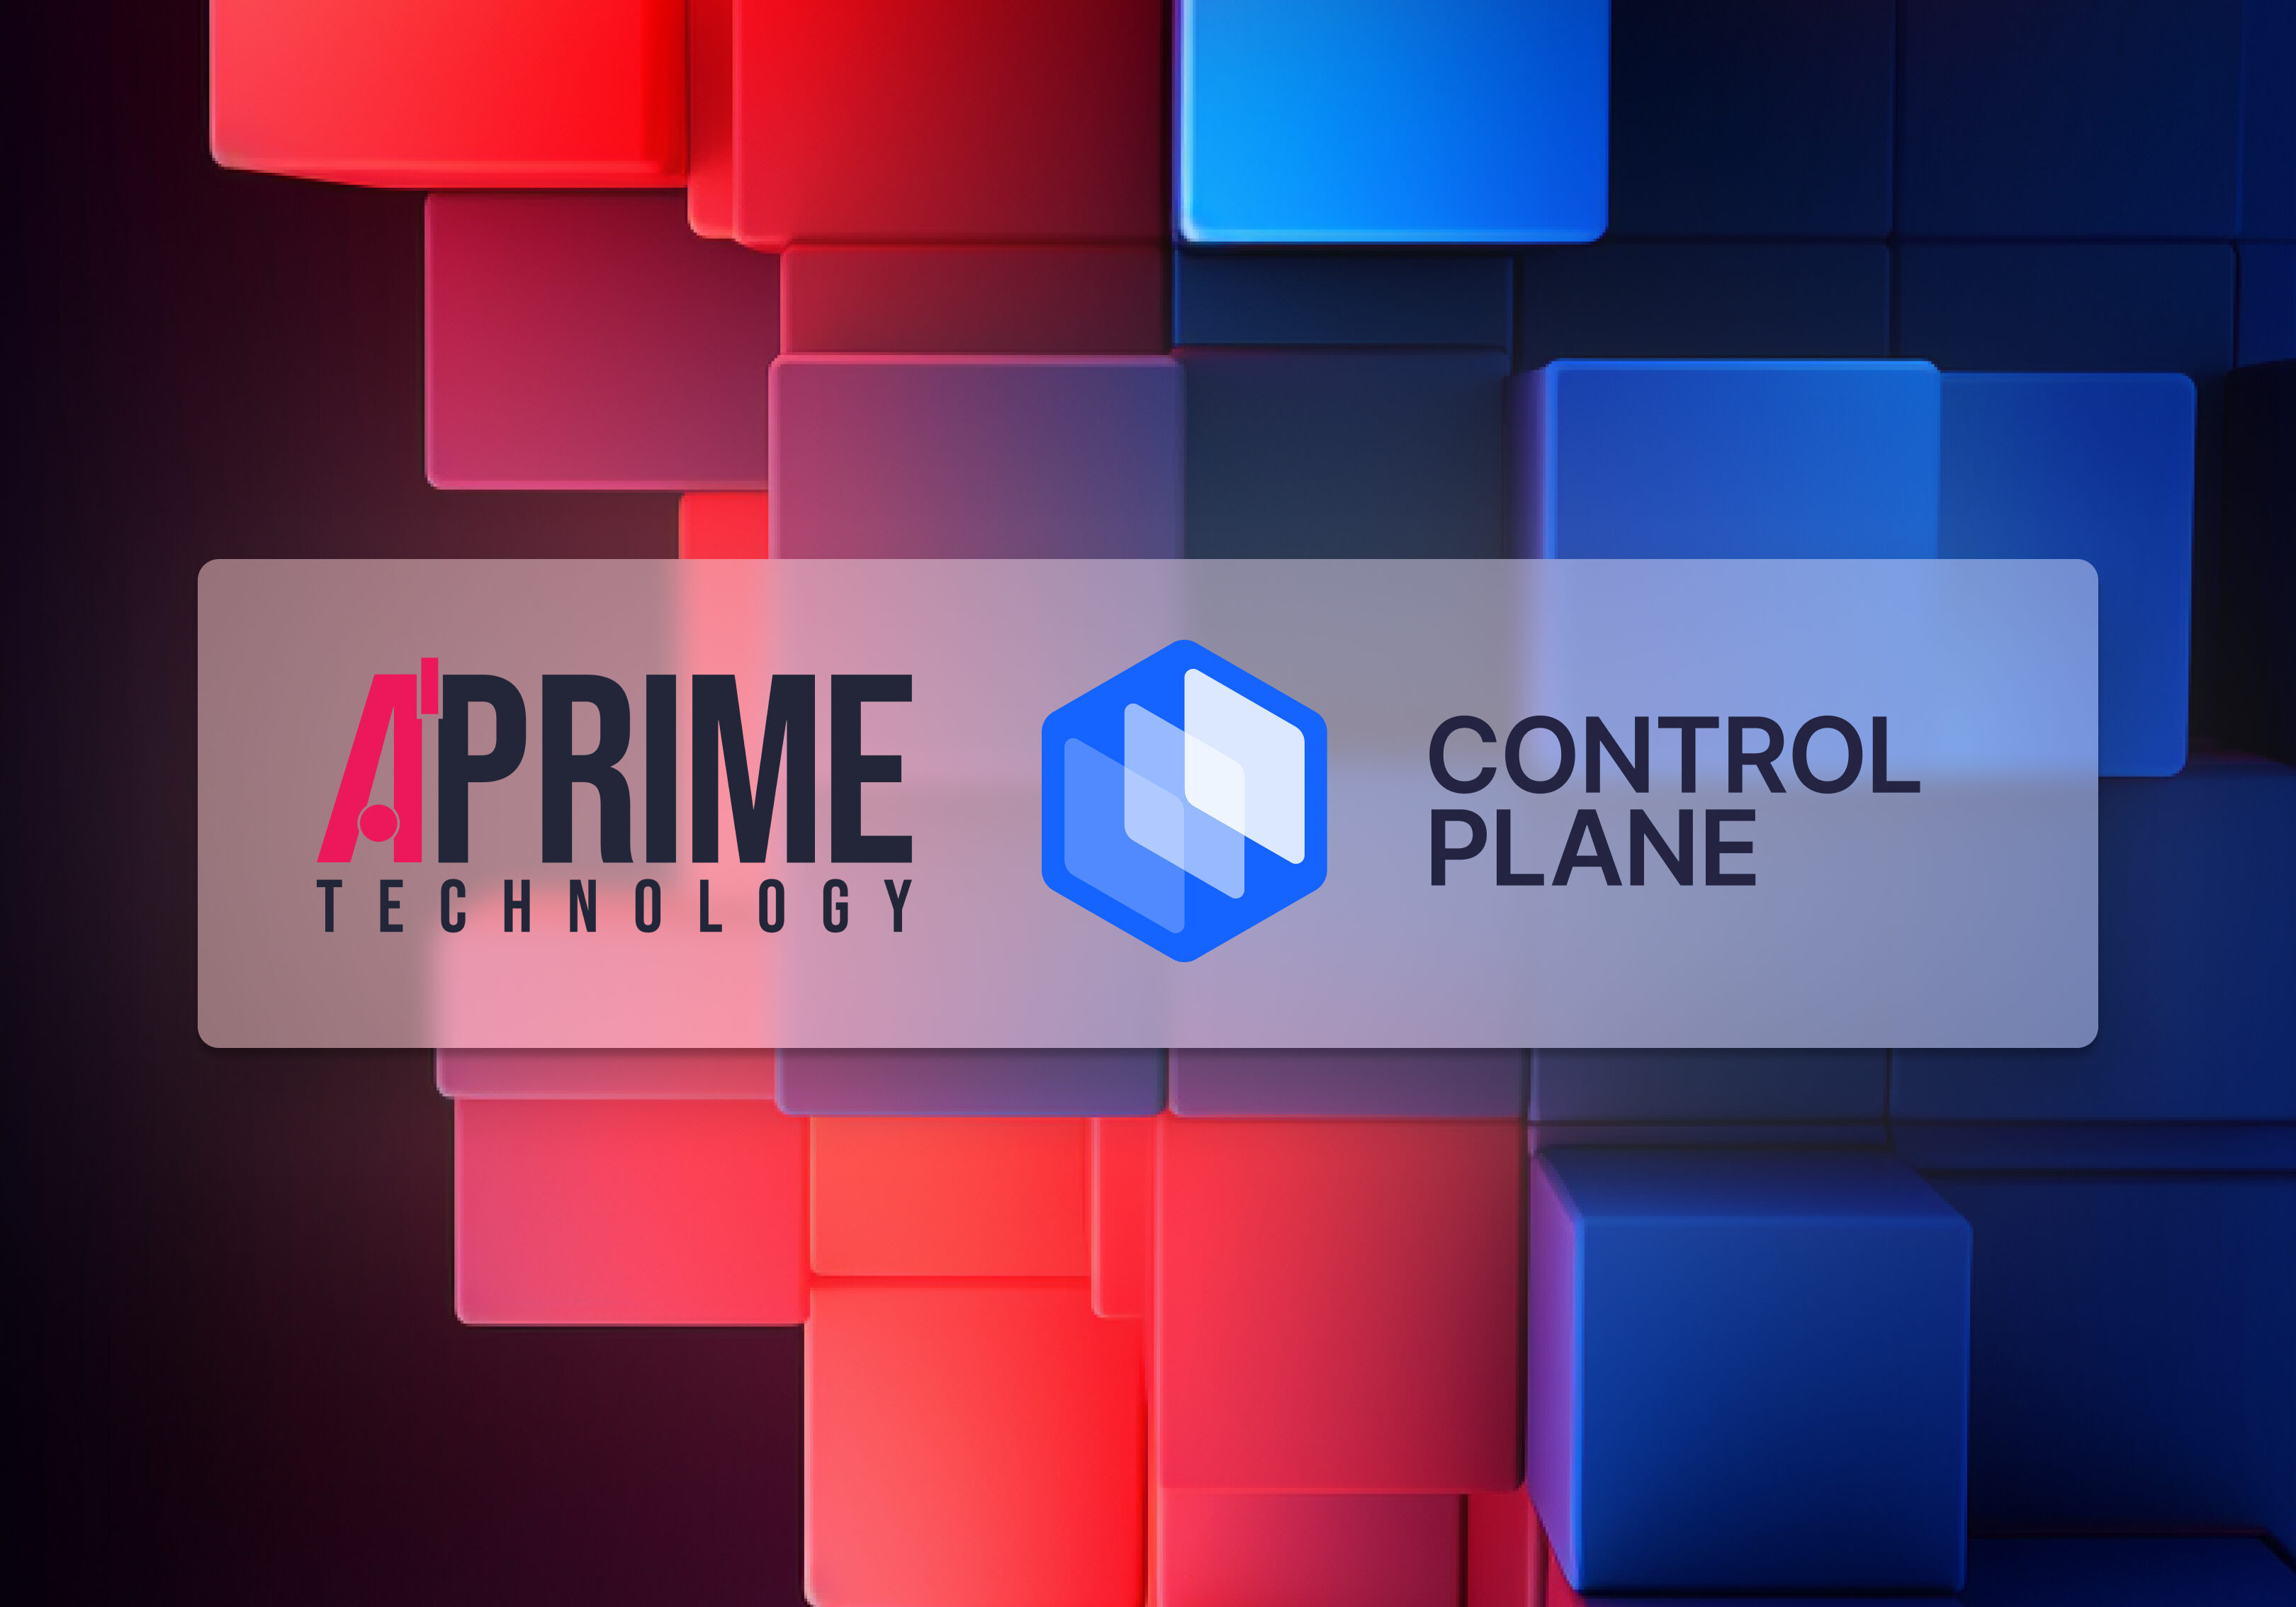 APrime is a Control Plane Premier Solutions Partner